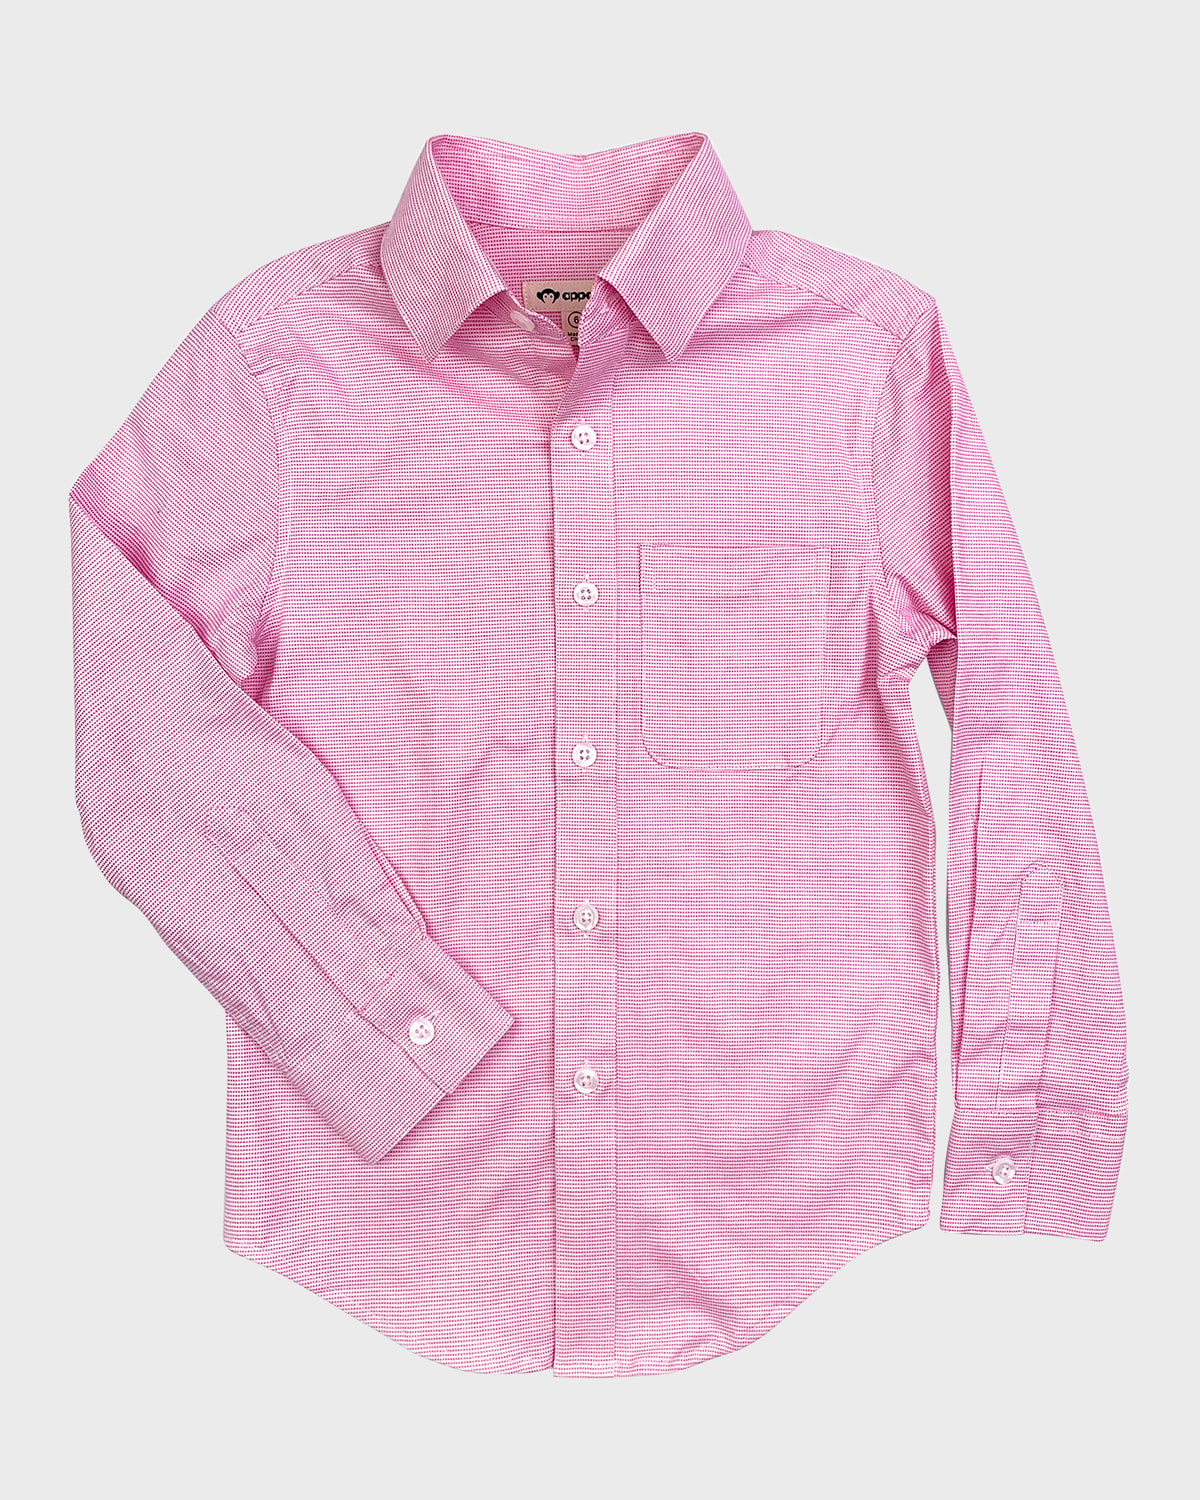 Boy's Standard Long-Sleeve Shirt, Size 2-12